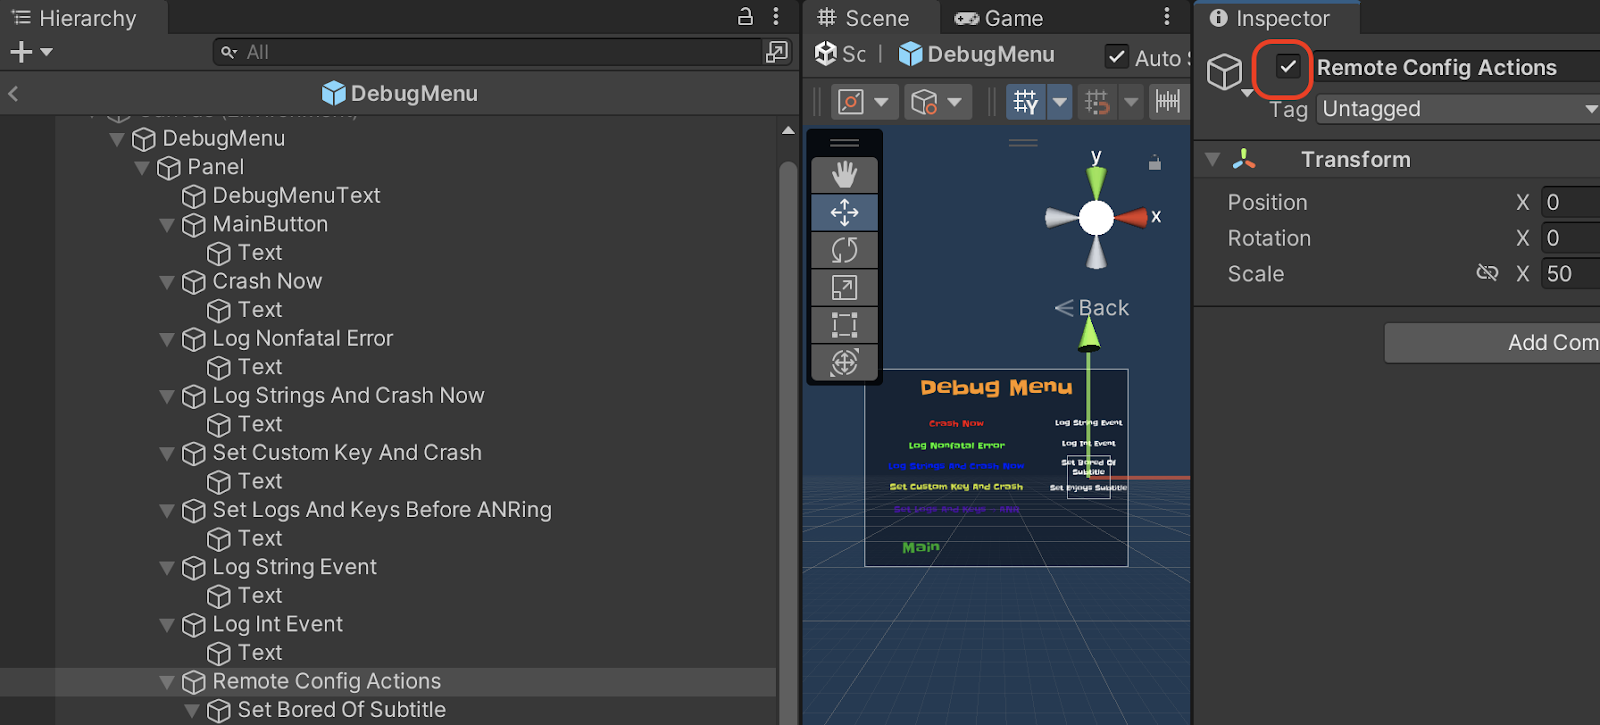 Editor de Unity con Remote Config\nAcciones habilitadas en DebugMenu, Panel